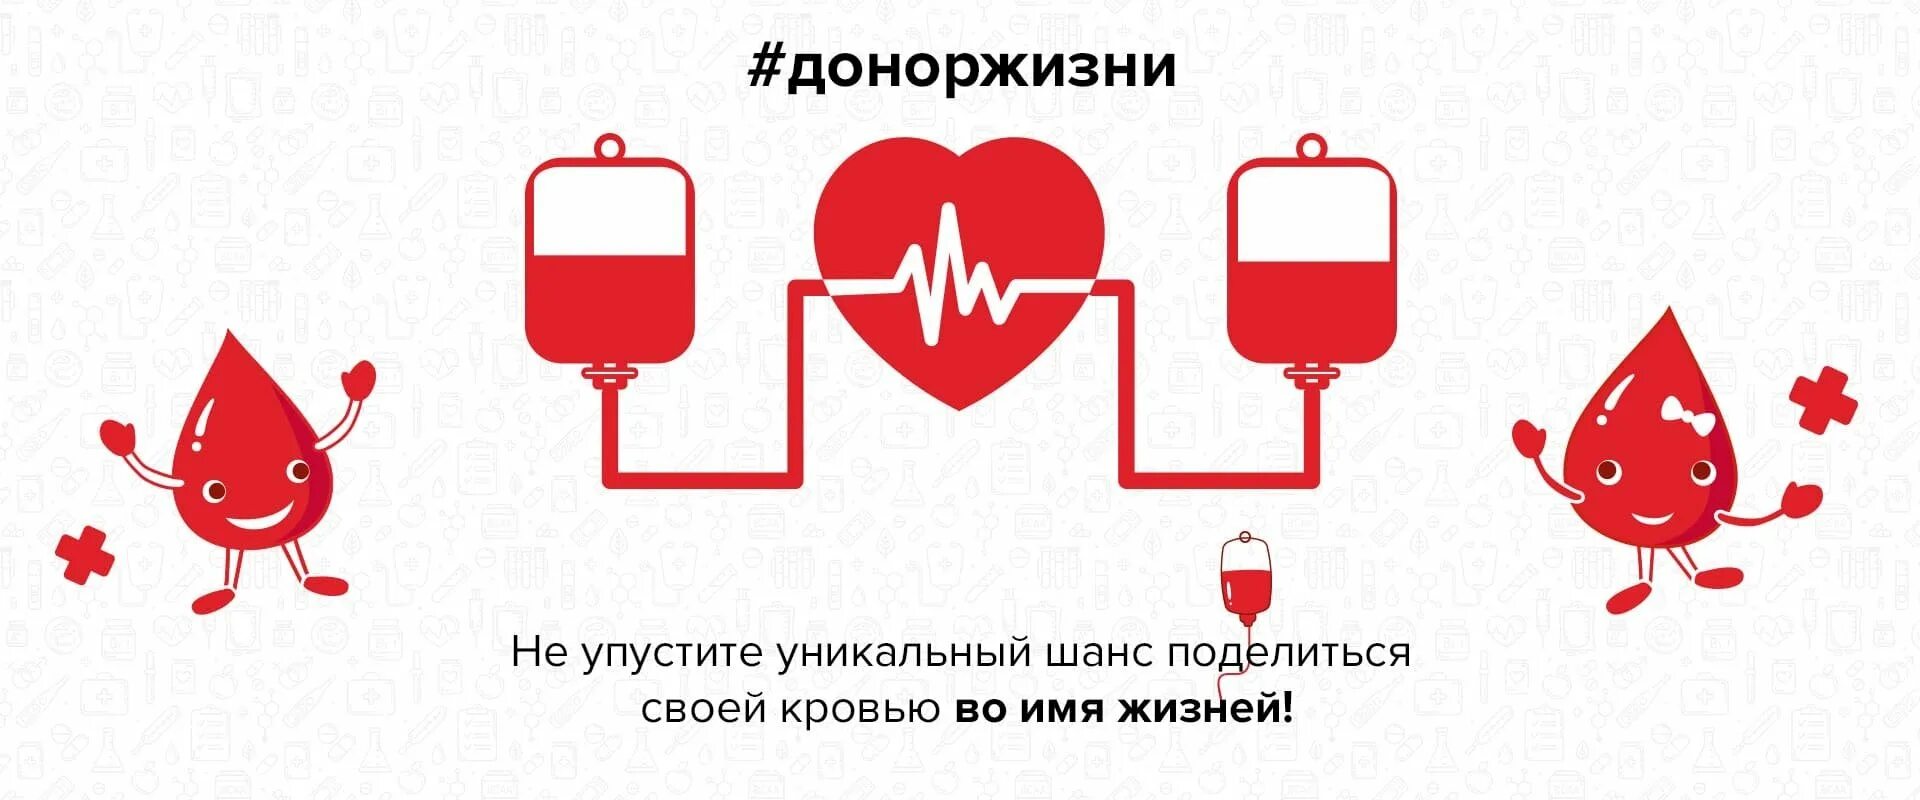 Сайт доноров крови. Донорство картинки. Донорство крови плакат. Донорство рисунок. Донорство крови рисунок.